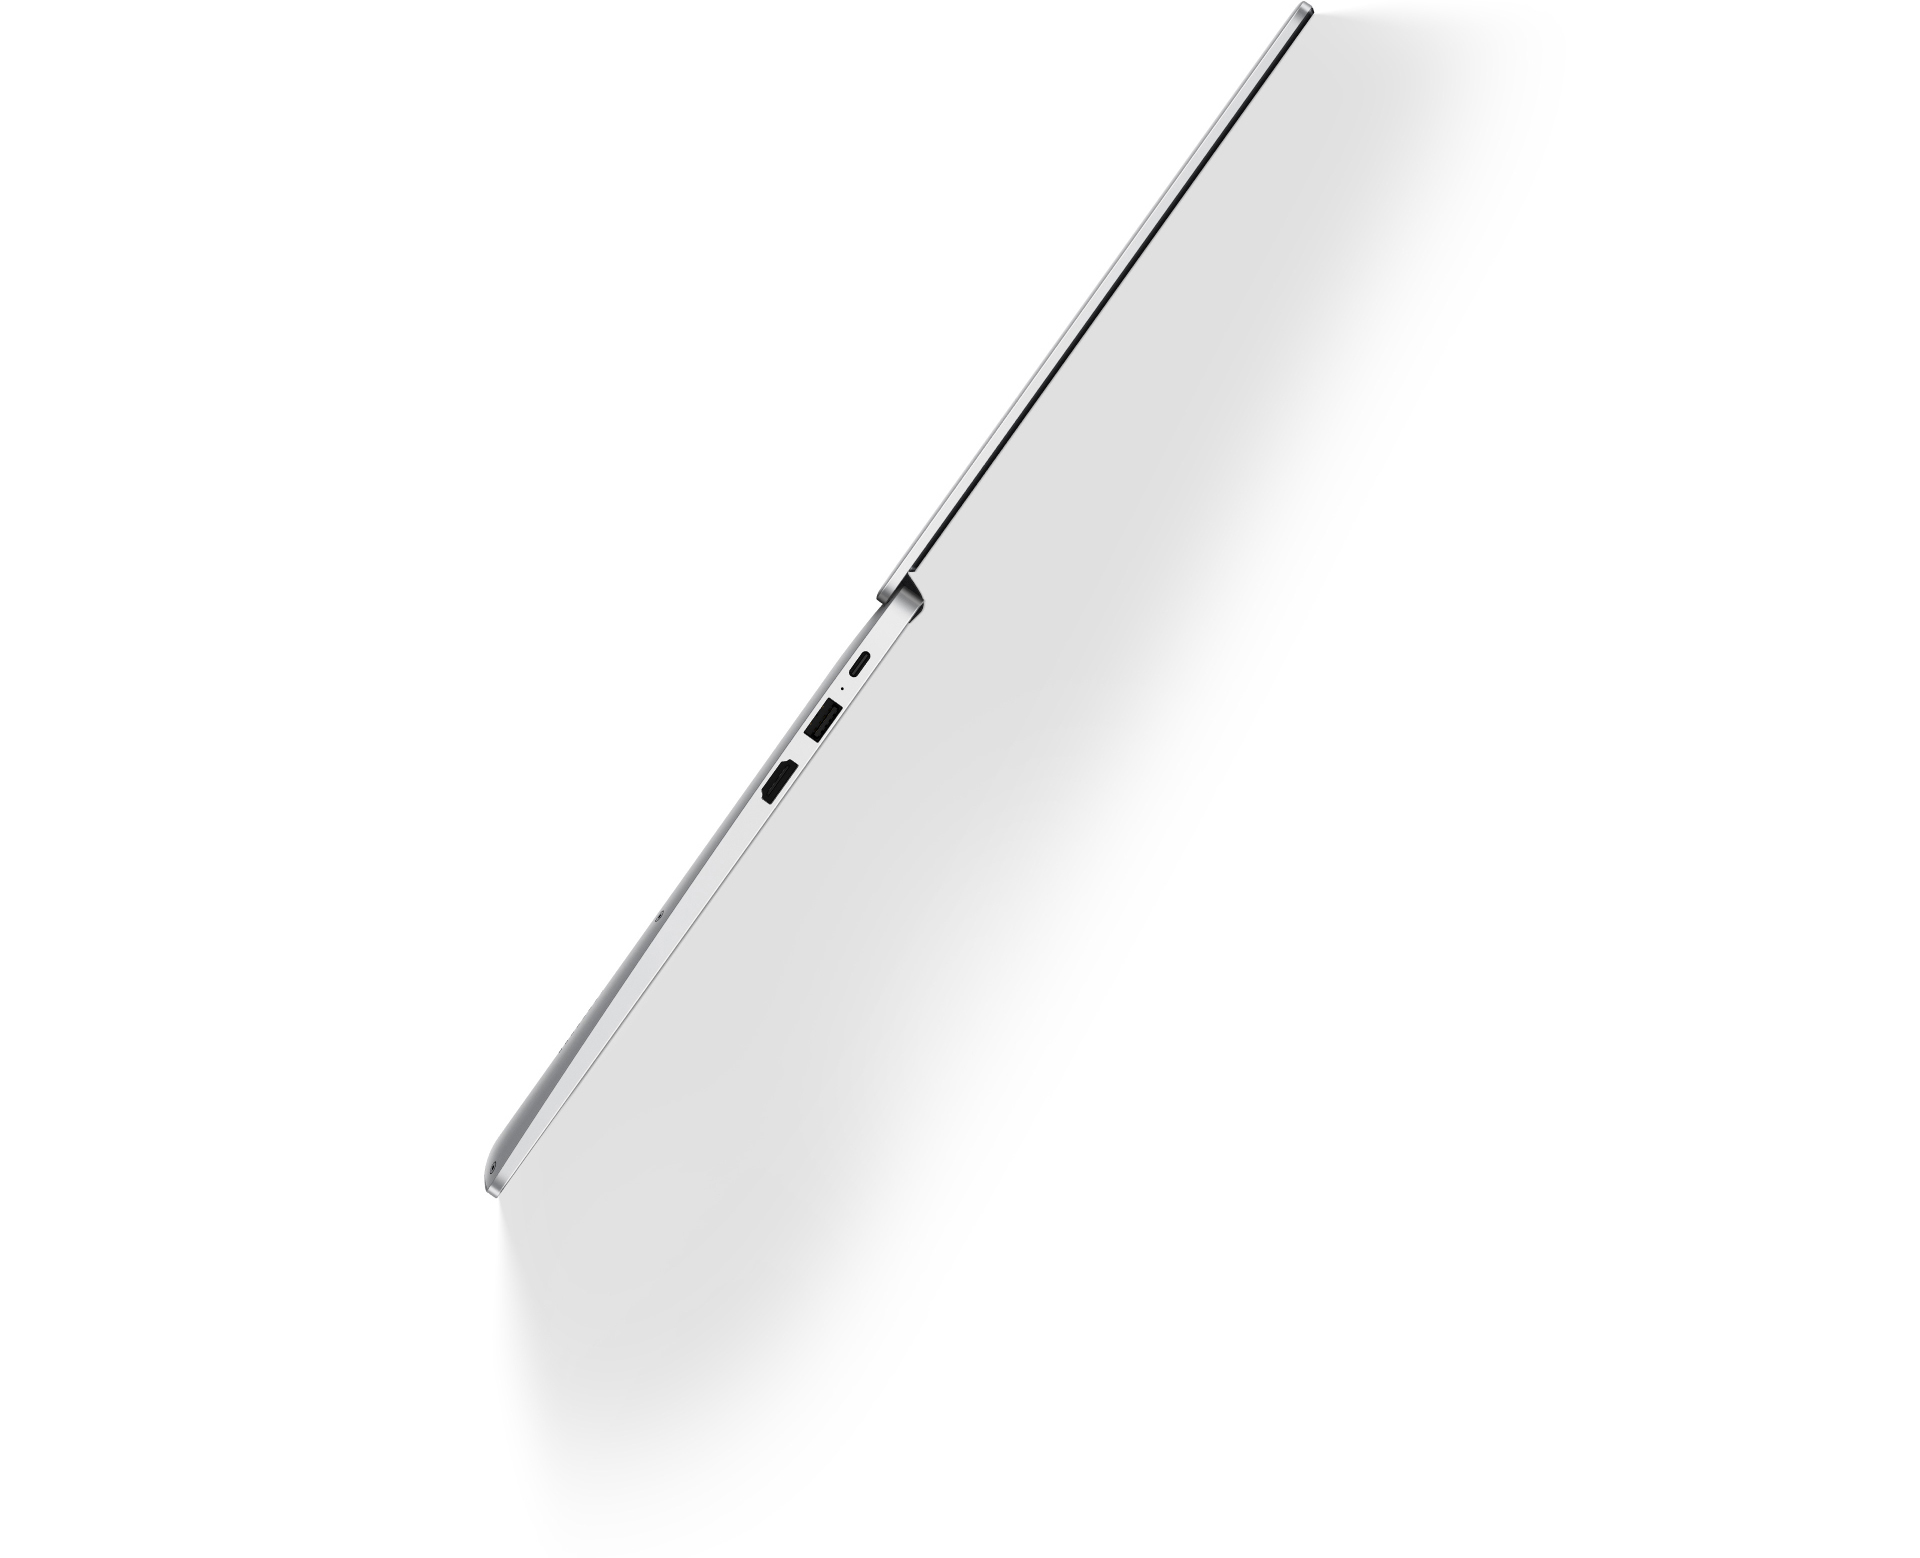 HUAWEI MateBook D 14 锐龙版 2020 轻薄设计